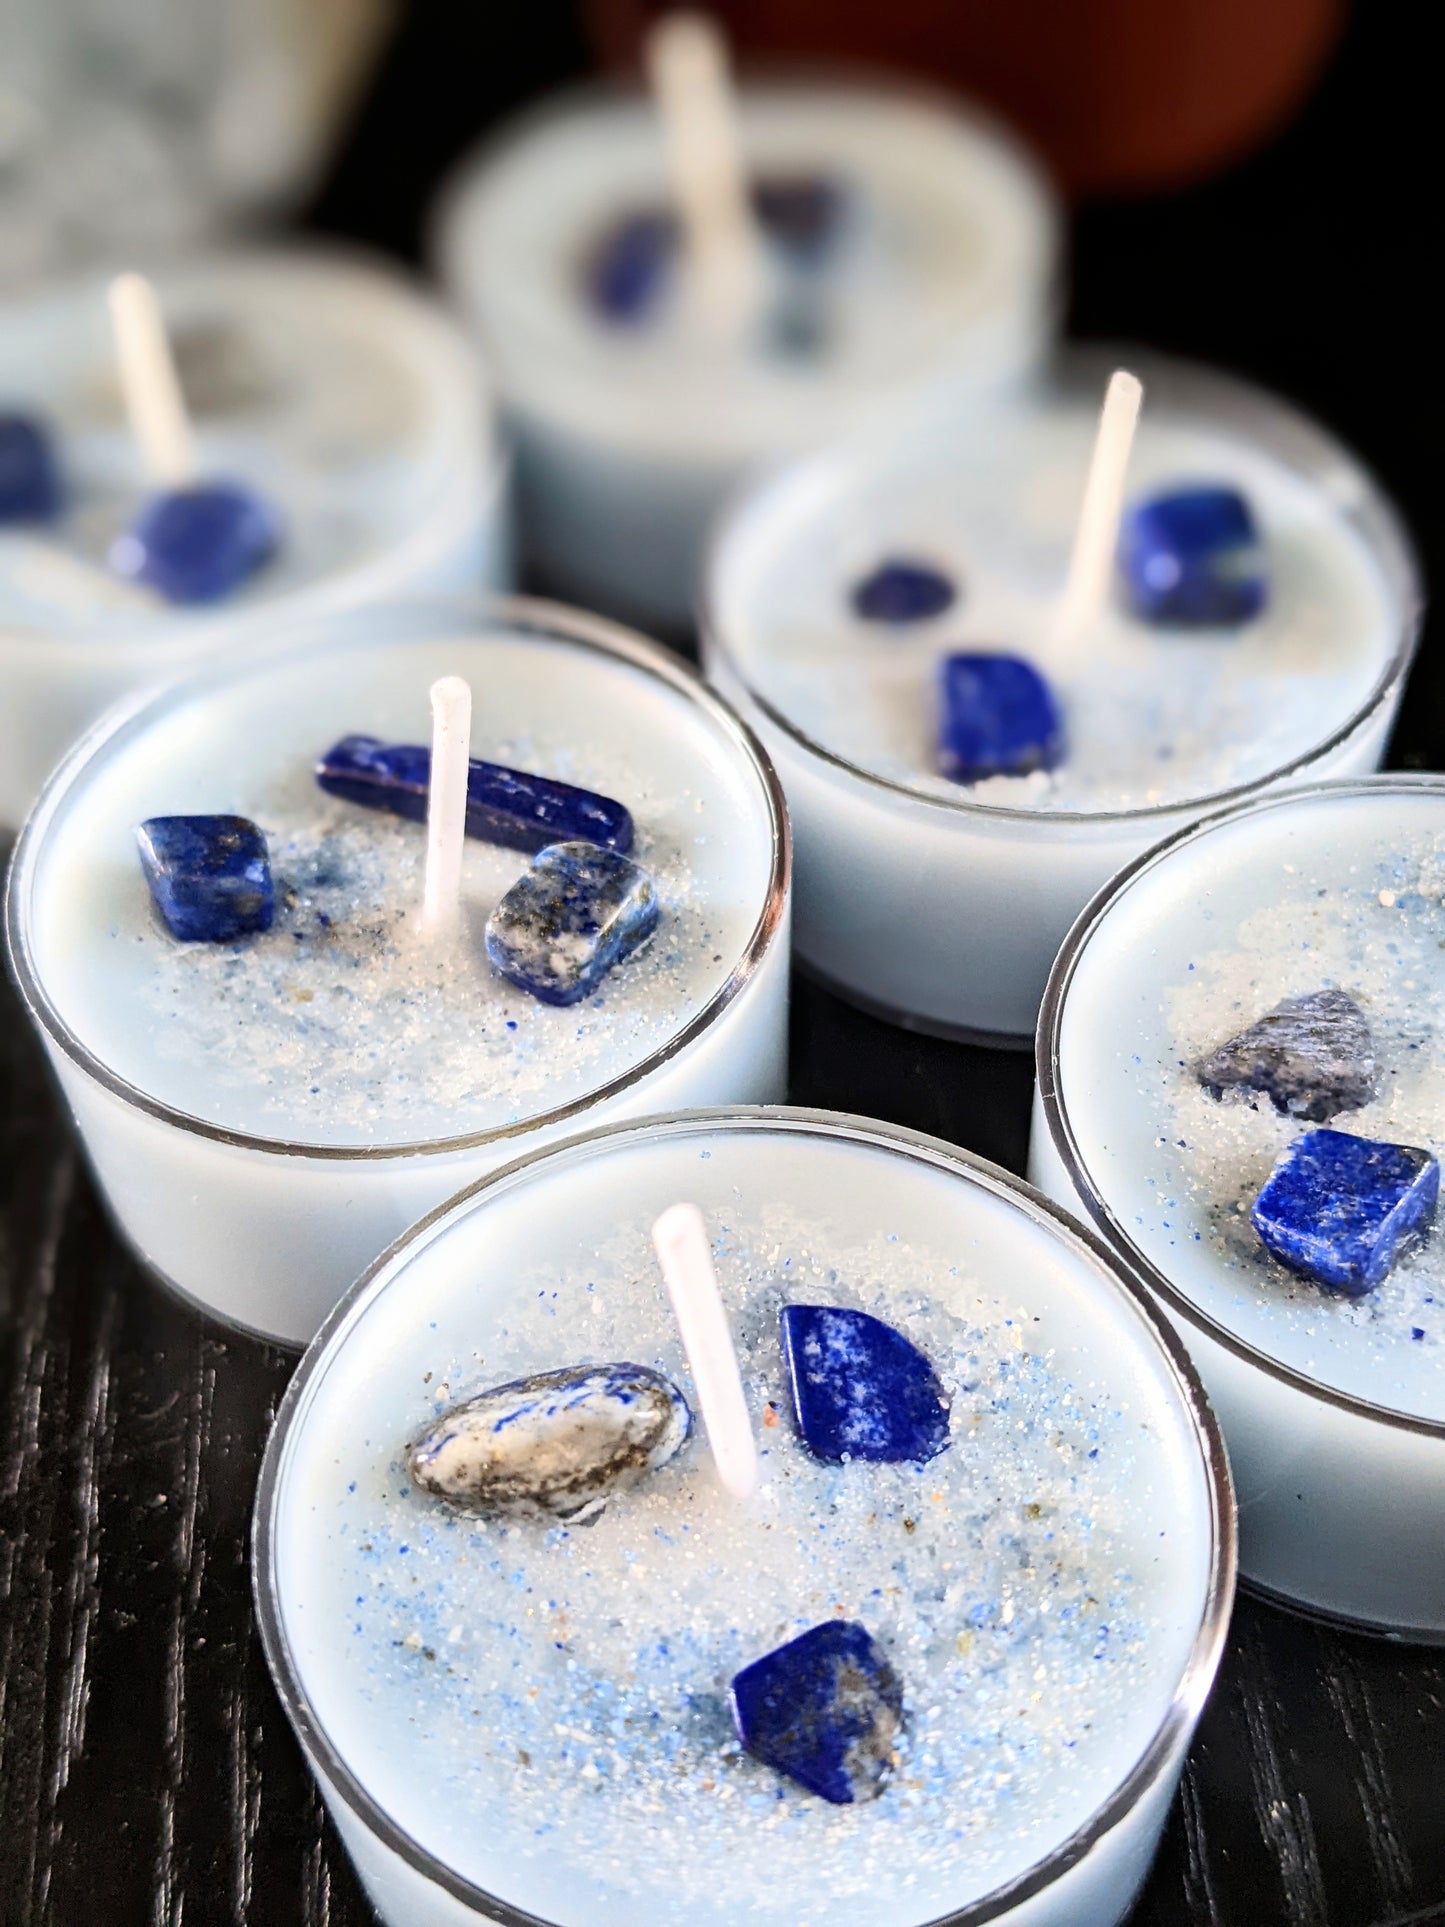 Nova & Cove - Lapis Lazuli Infused Tealights